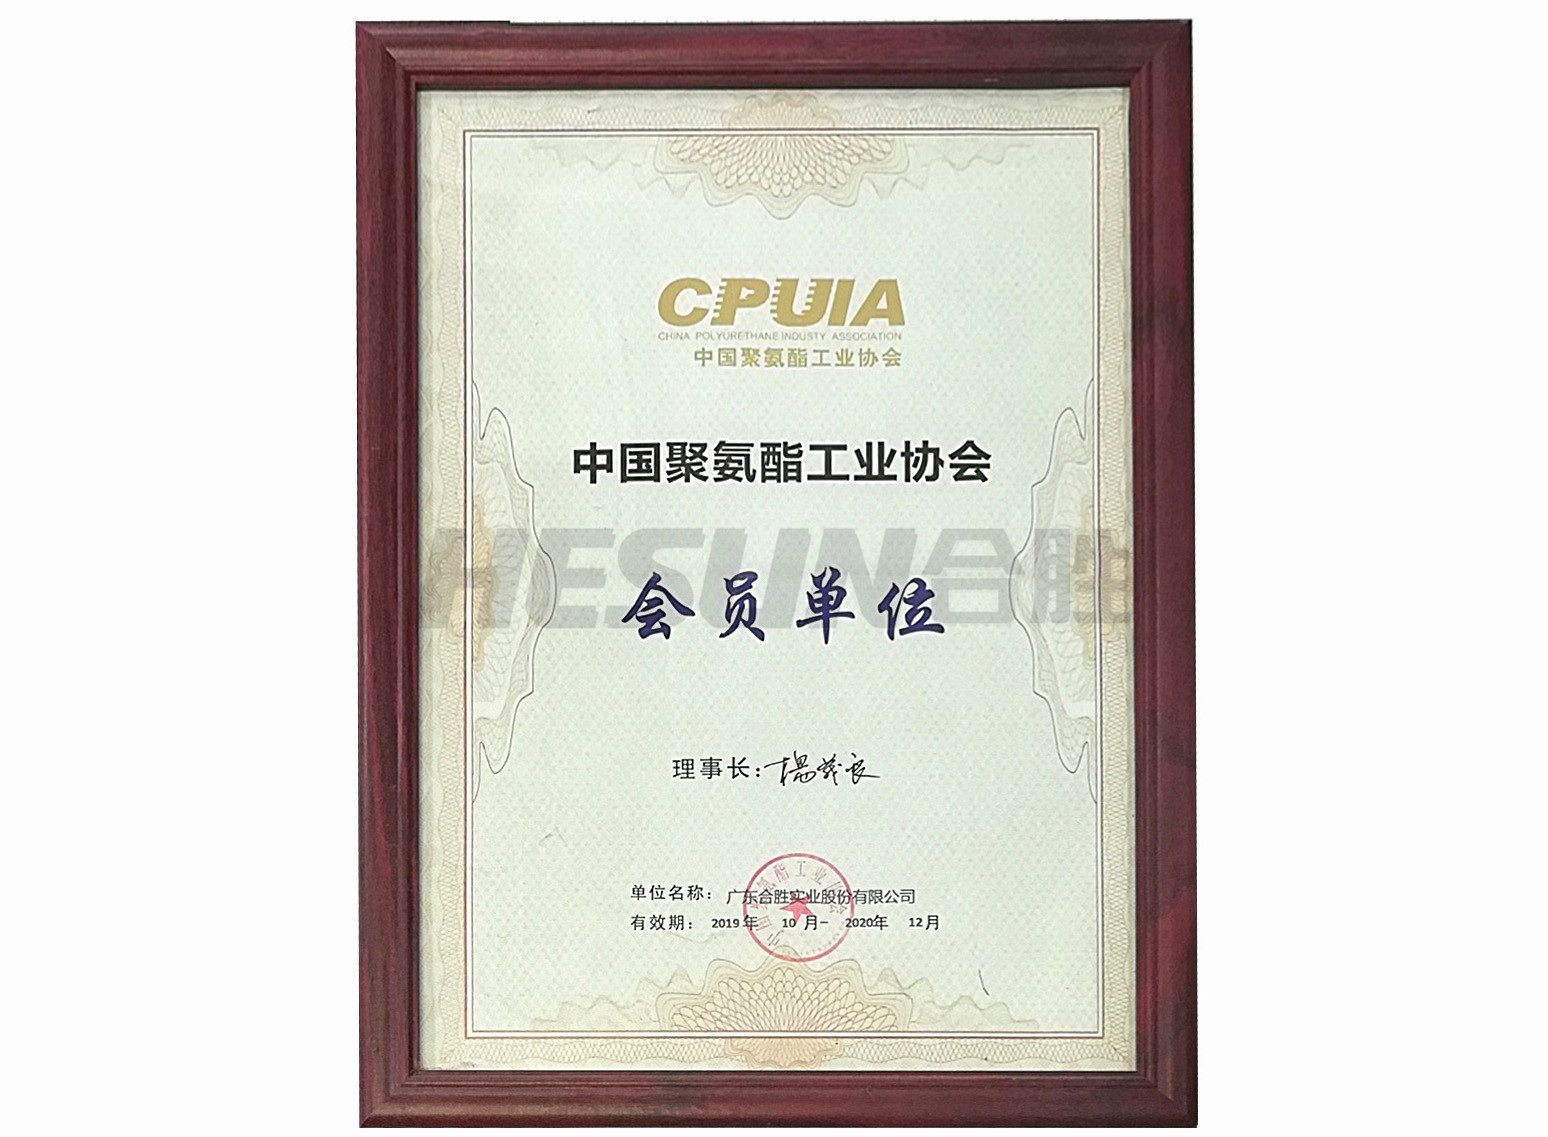 中国聚氨酯工业协会会员